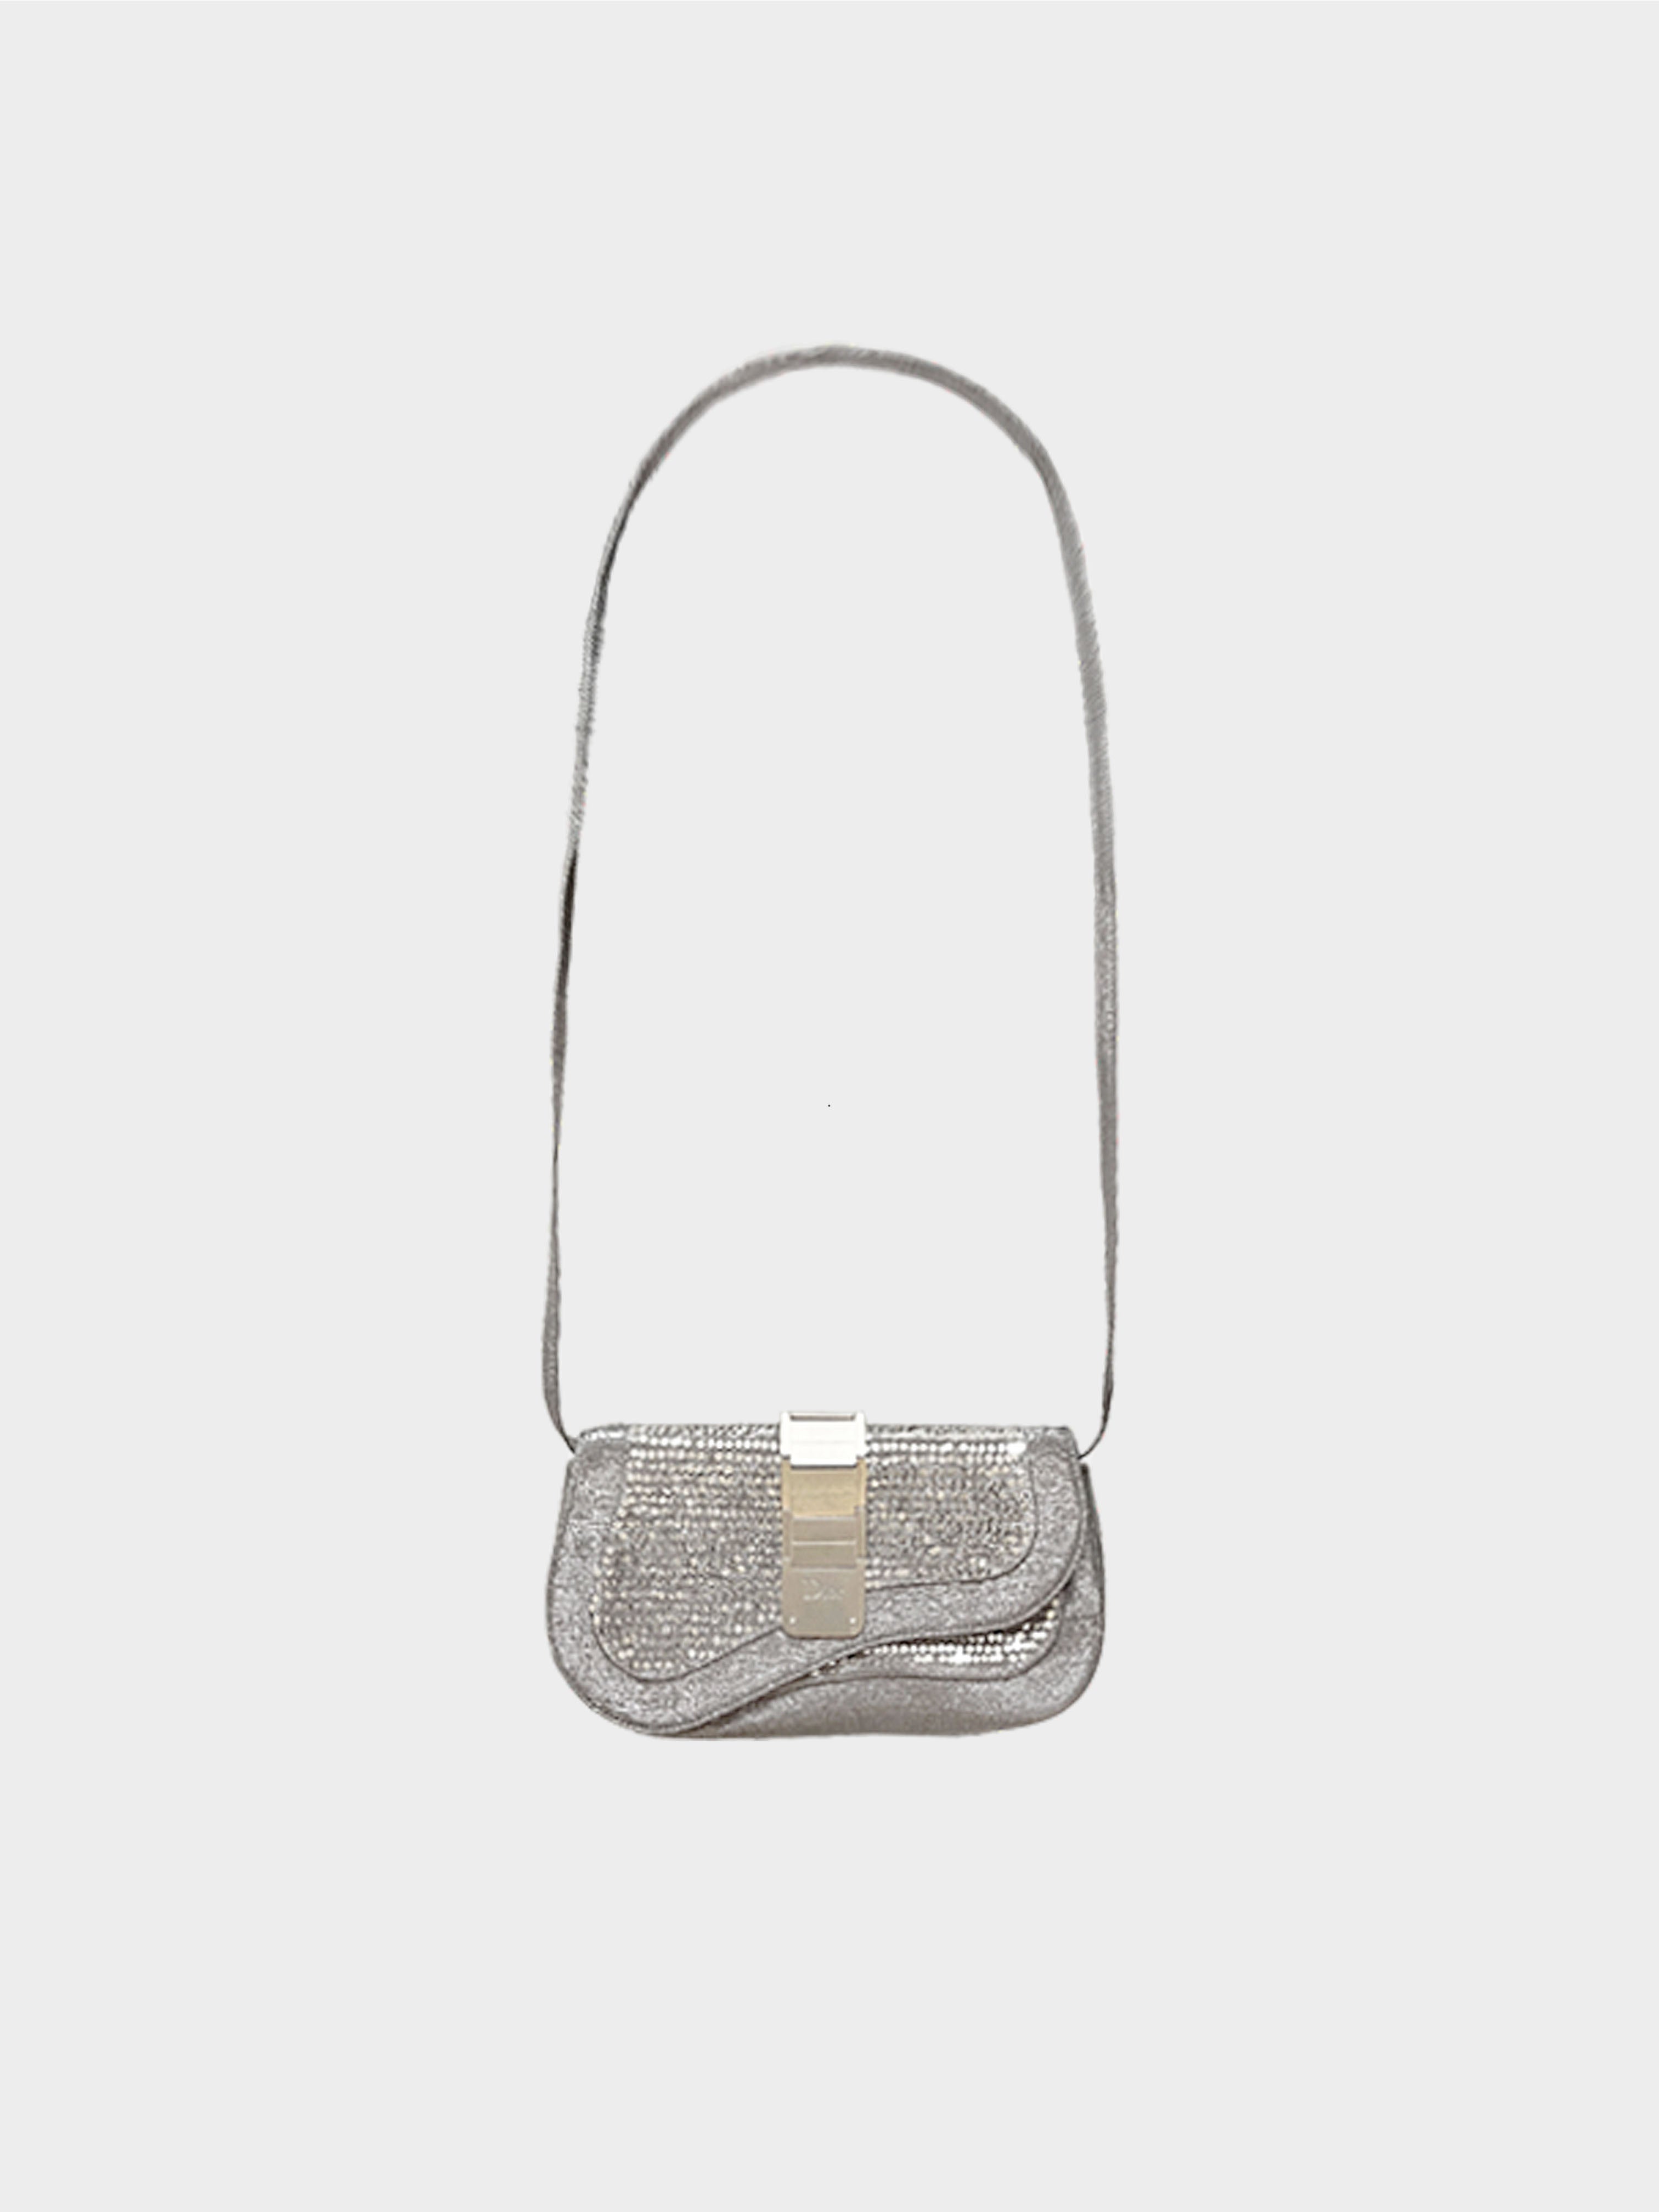 Christian Dior SS 2006 Limited Edition Silver Metallic Gaucho Crossbody Bag